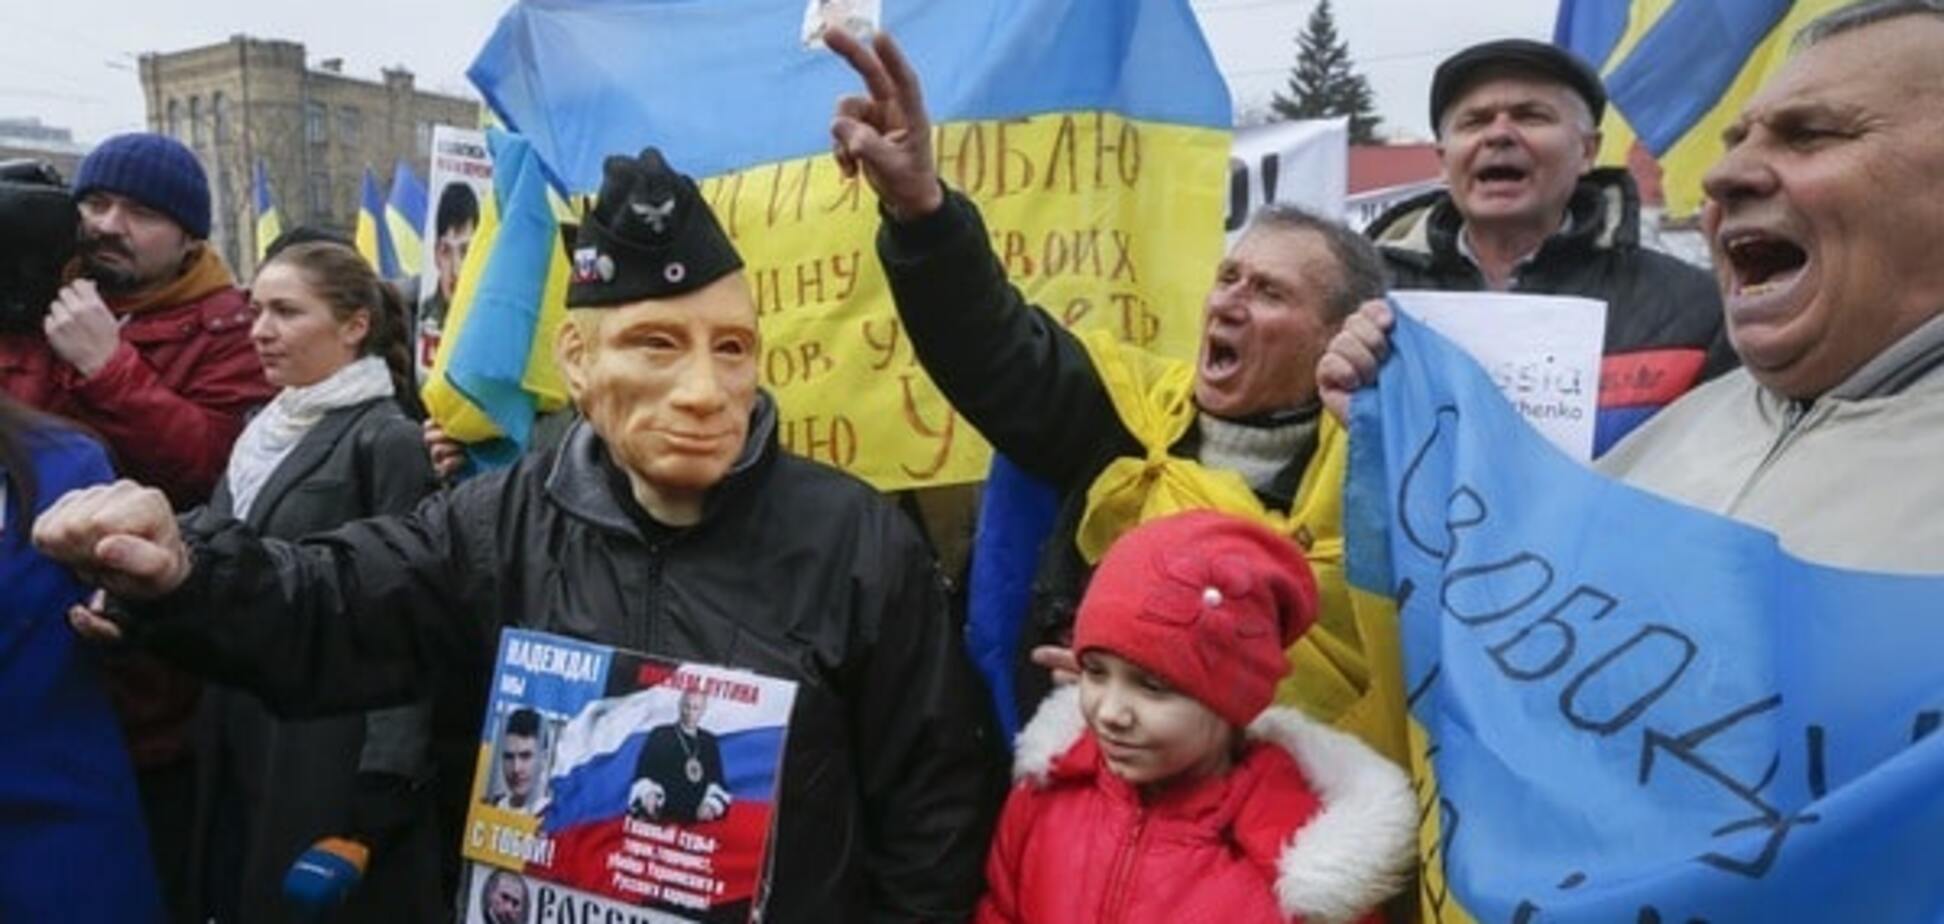 Вероятен плохой сценарий: российский оппозиционер раскрыл причины заключения Савченко 